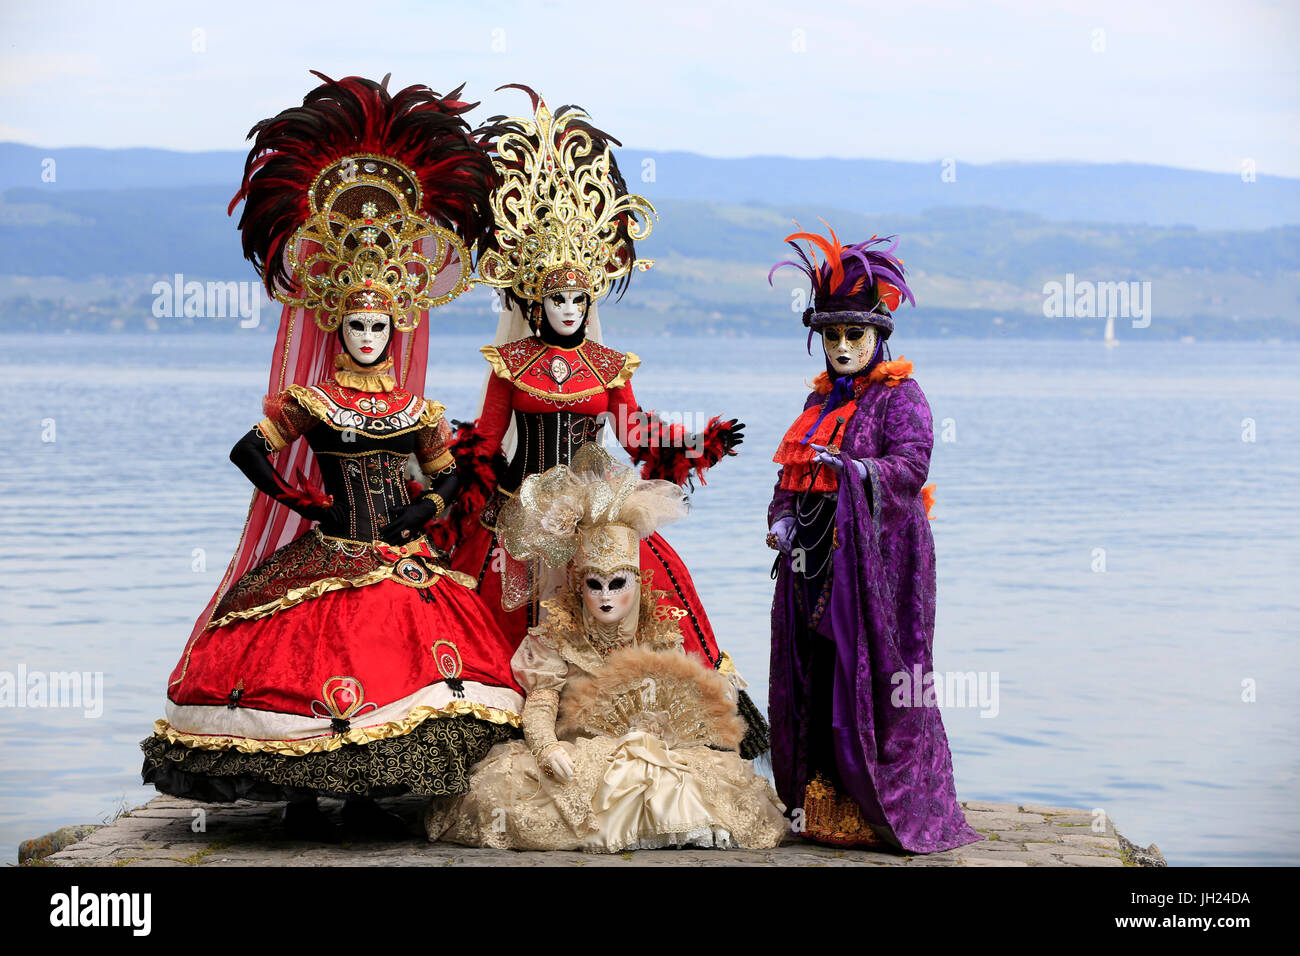 Yvoire, Les Plus Beaux Dörfer de France (die schönsten Dörfer Frankreichs) gekennzeichnet. Der venezianische Karneval.  Frauen tragen Karnevalskostüm. Stockfoto